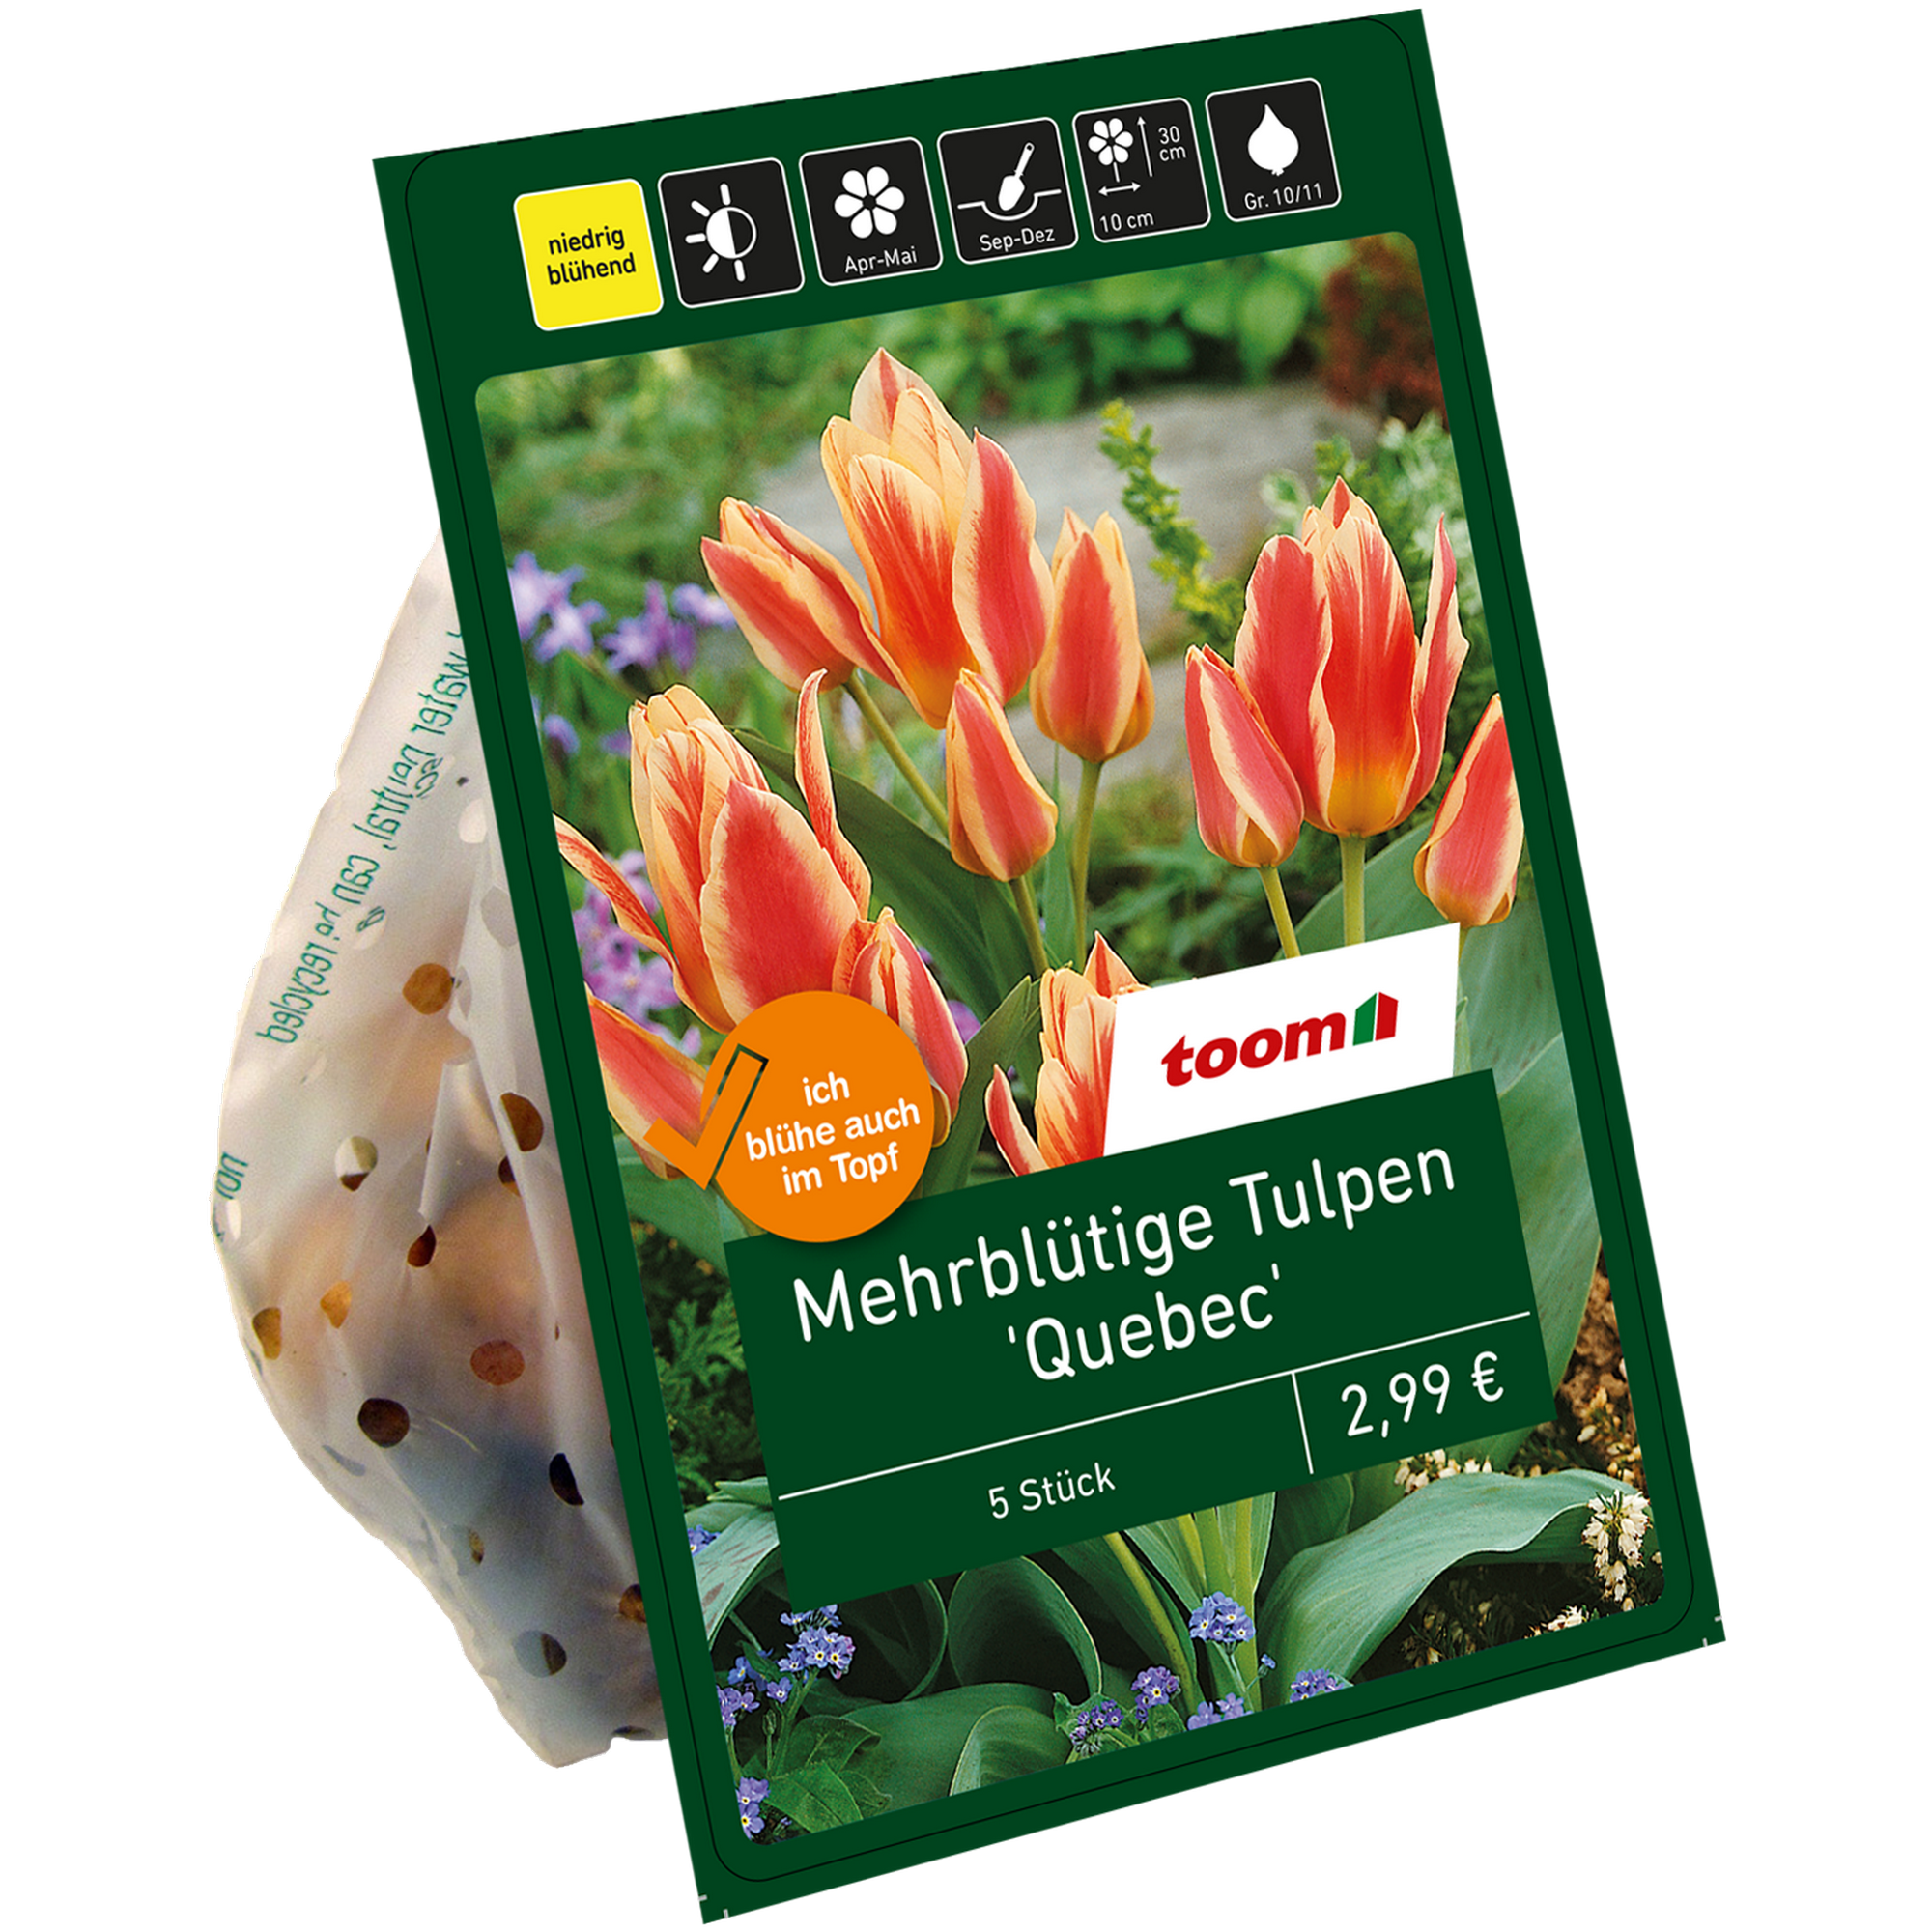 Tulpen 'Quebec Multiflowering' lachsfarben-gelb 5 Zwiebeln + product picture